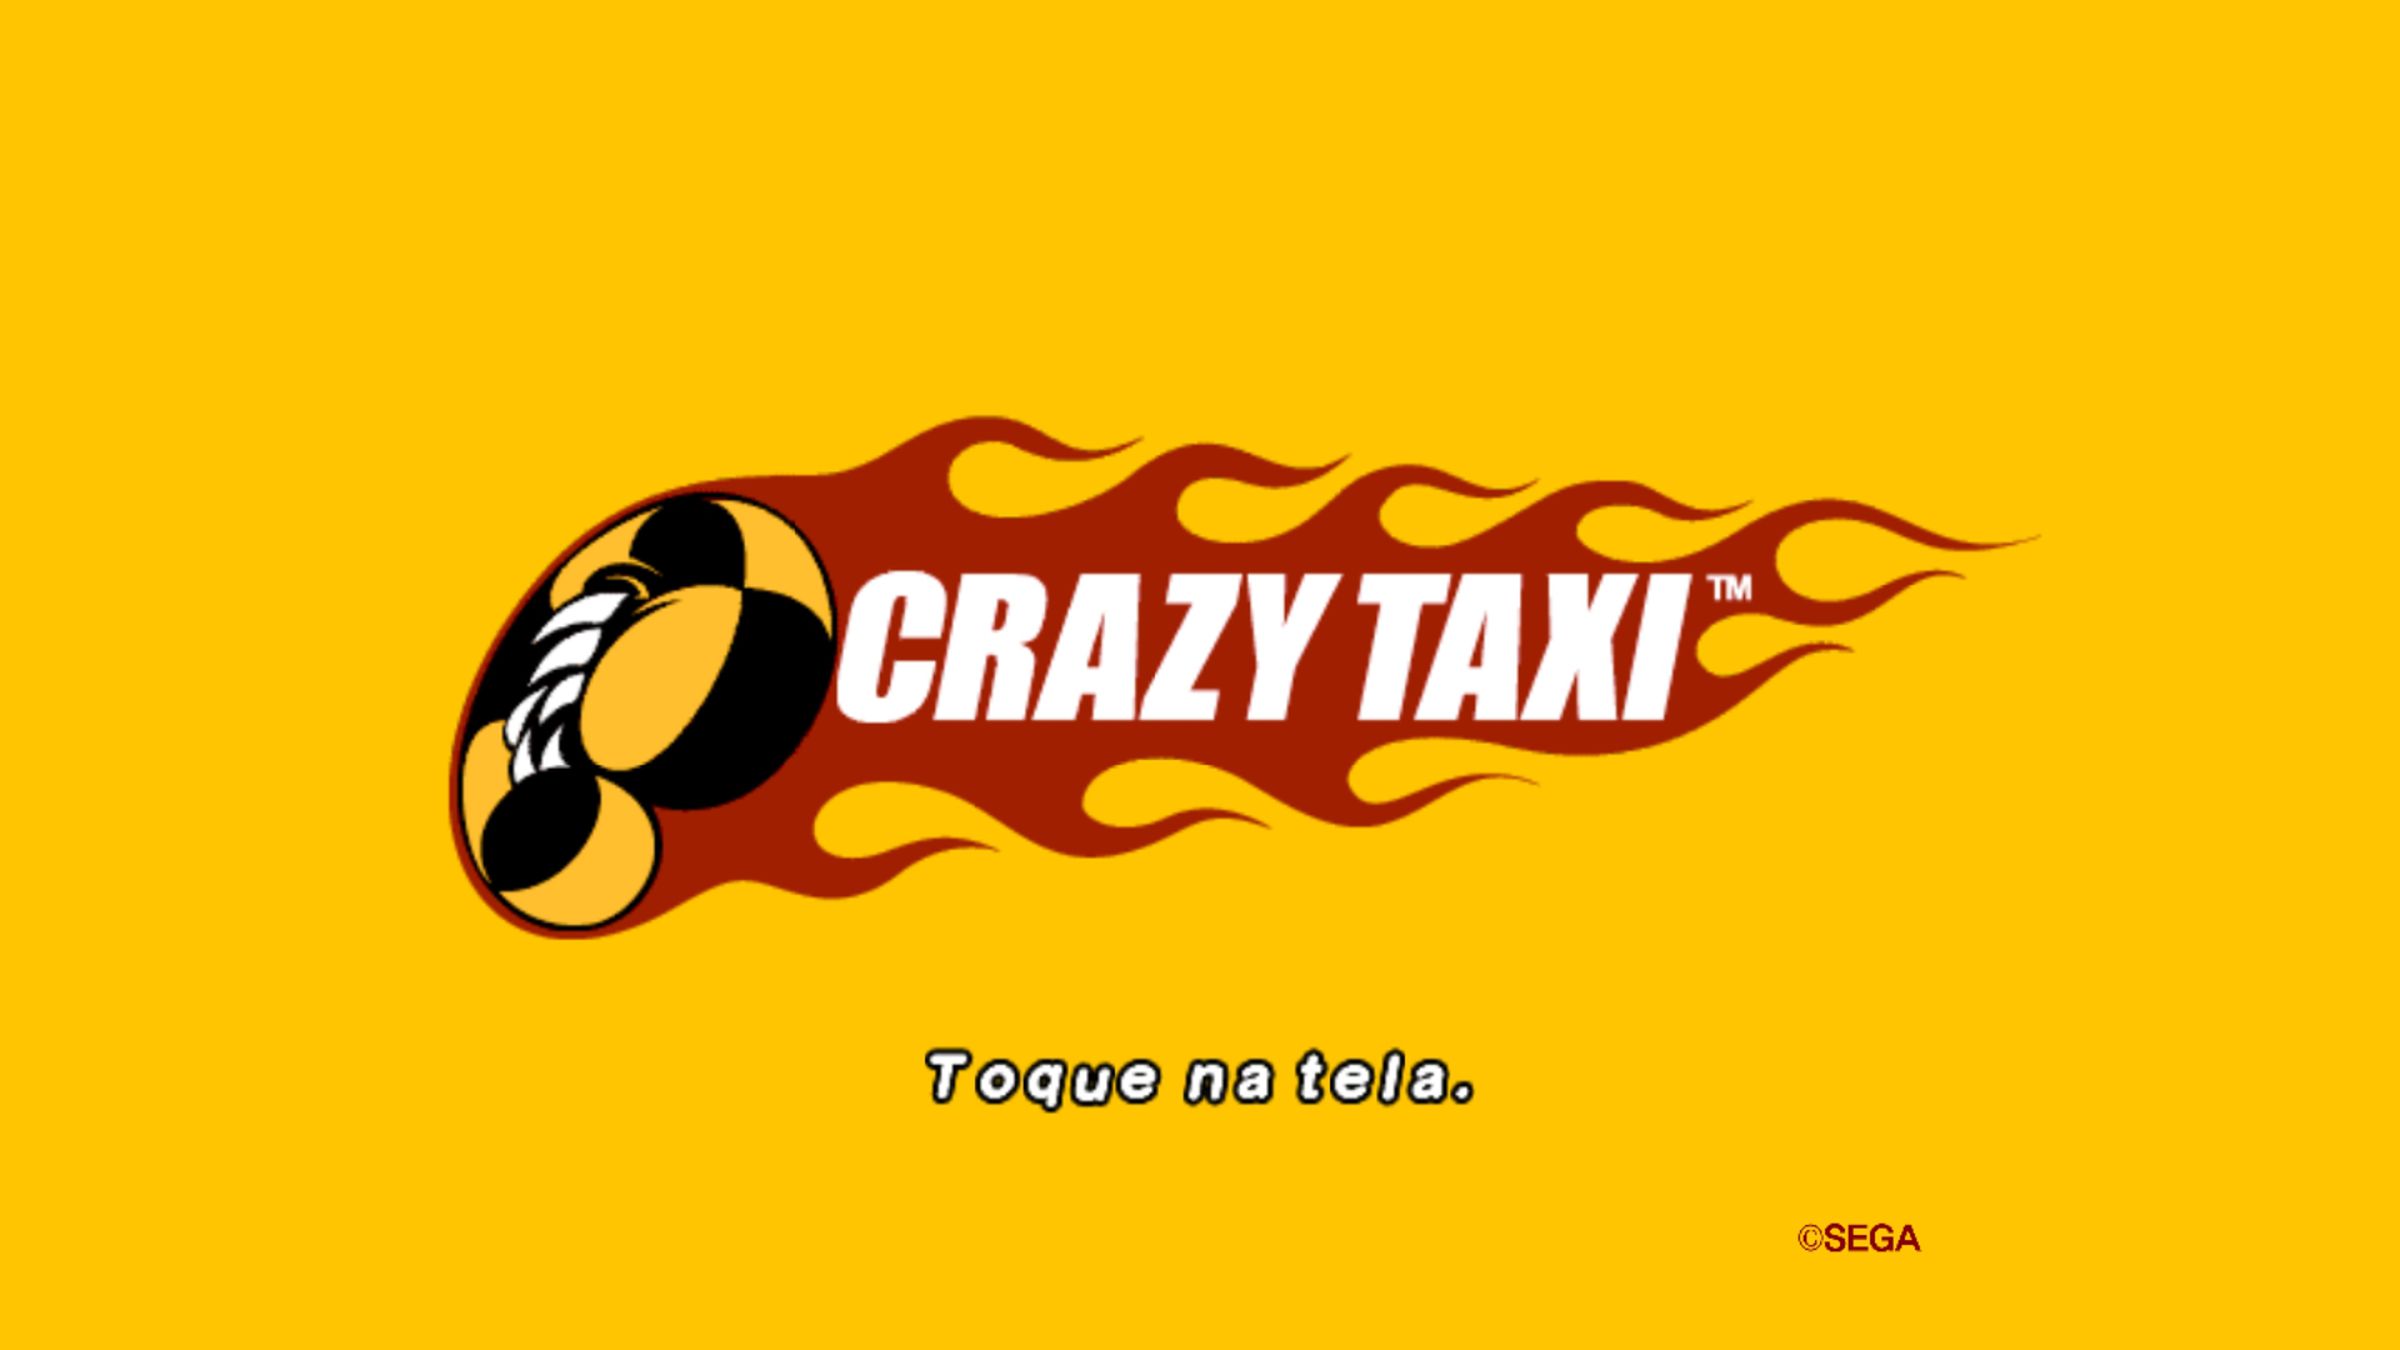 Os melhores jogos de táxi para celular - Canaltech